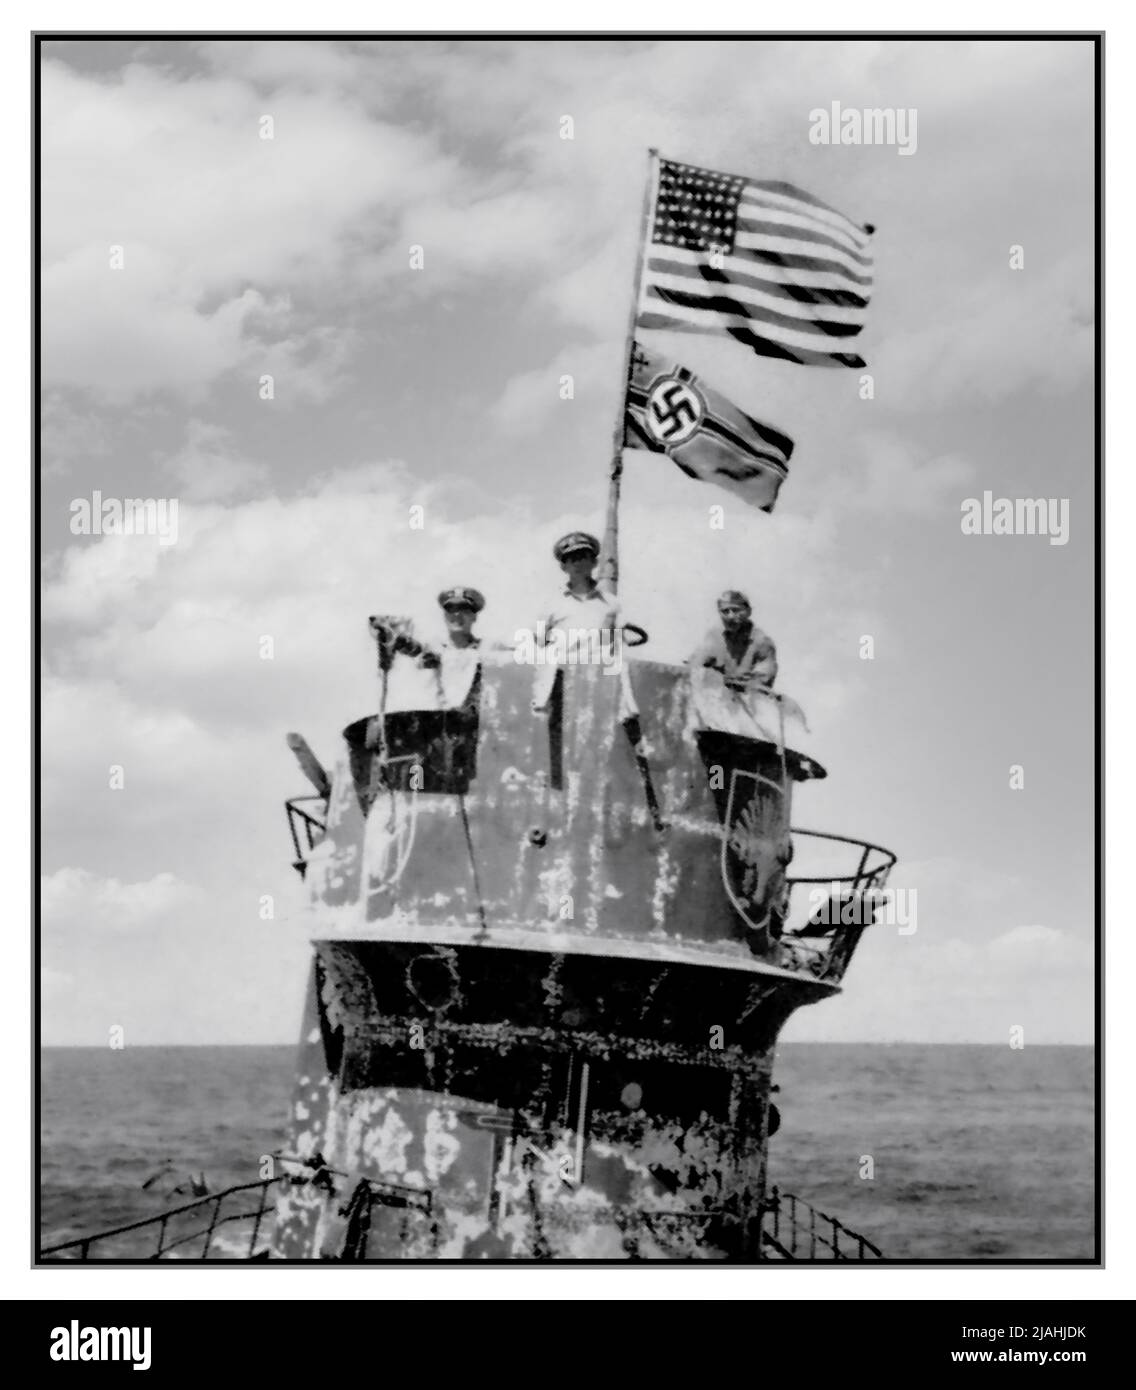 NAZI-U-BOOT US-Marineoffiziere auf dem Turm des gefangenen Nazi-deutschen U-Boots U-505 am 4. Juni 1944. Die Offiziere sind von rechts nach links: Kommandant Earl Trosino, USNR; Kapitän Daniel V. Gallery, Jr., USN, Kommandant, USS Guadalcanal (CVE-60); Und Leutnant Junior Grade Albert L. David, USN, der posthum die Ehrenmedaille für die Führung der Boarding-Party, die das U-Boot gefangen nahm und Bergungsoperationen durchgeführt erhielt. Beachten Sie die Flagge der Vereinigten Staaten, die über dem deutschen Navy-Schild mit der Kreigsmarine fliegt. U-505 war das erste feindliche Kriegsschiff, das auf hoher See gefangen genommen wurde. Stockfoto